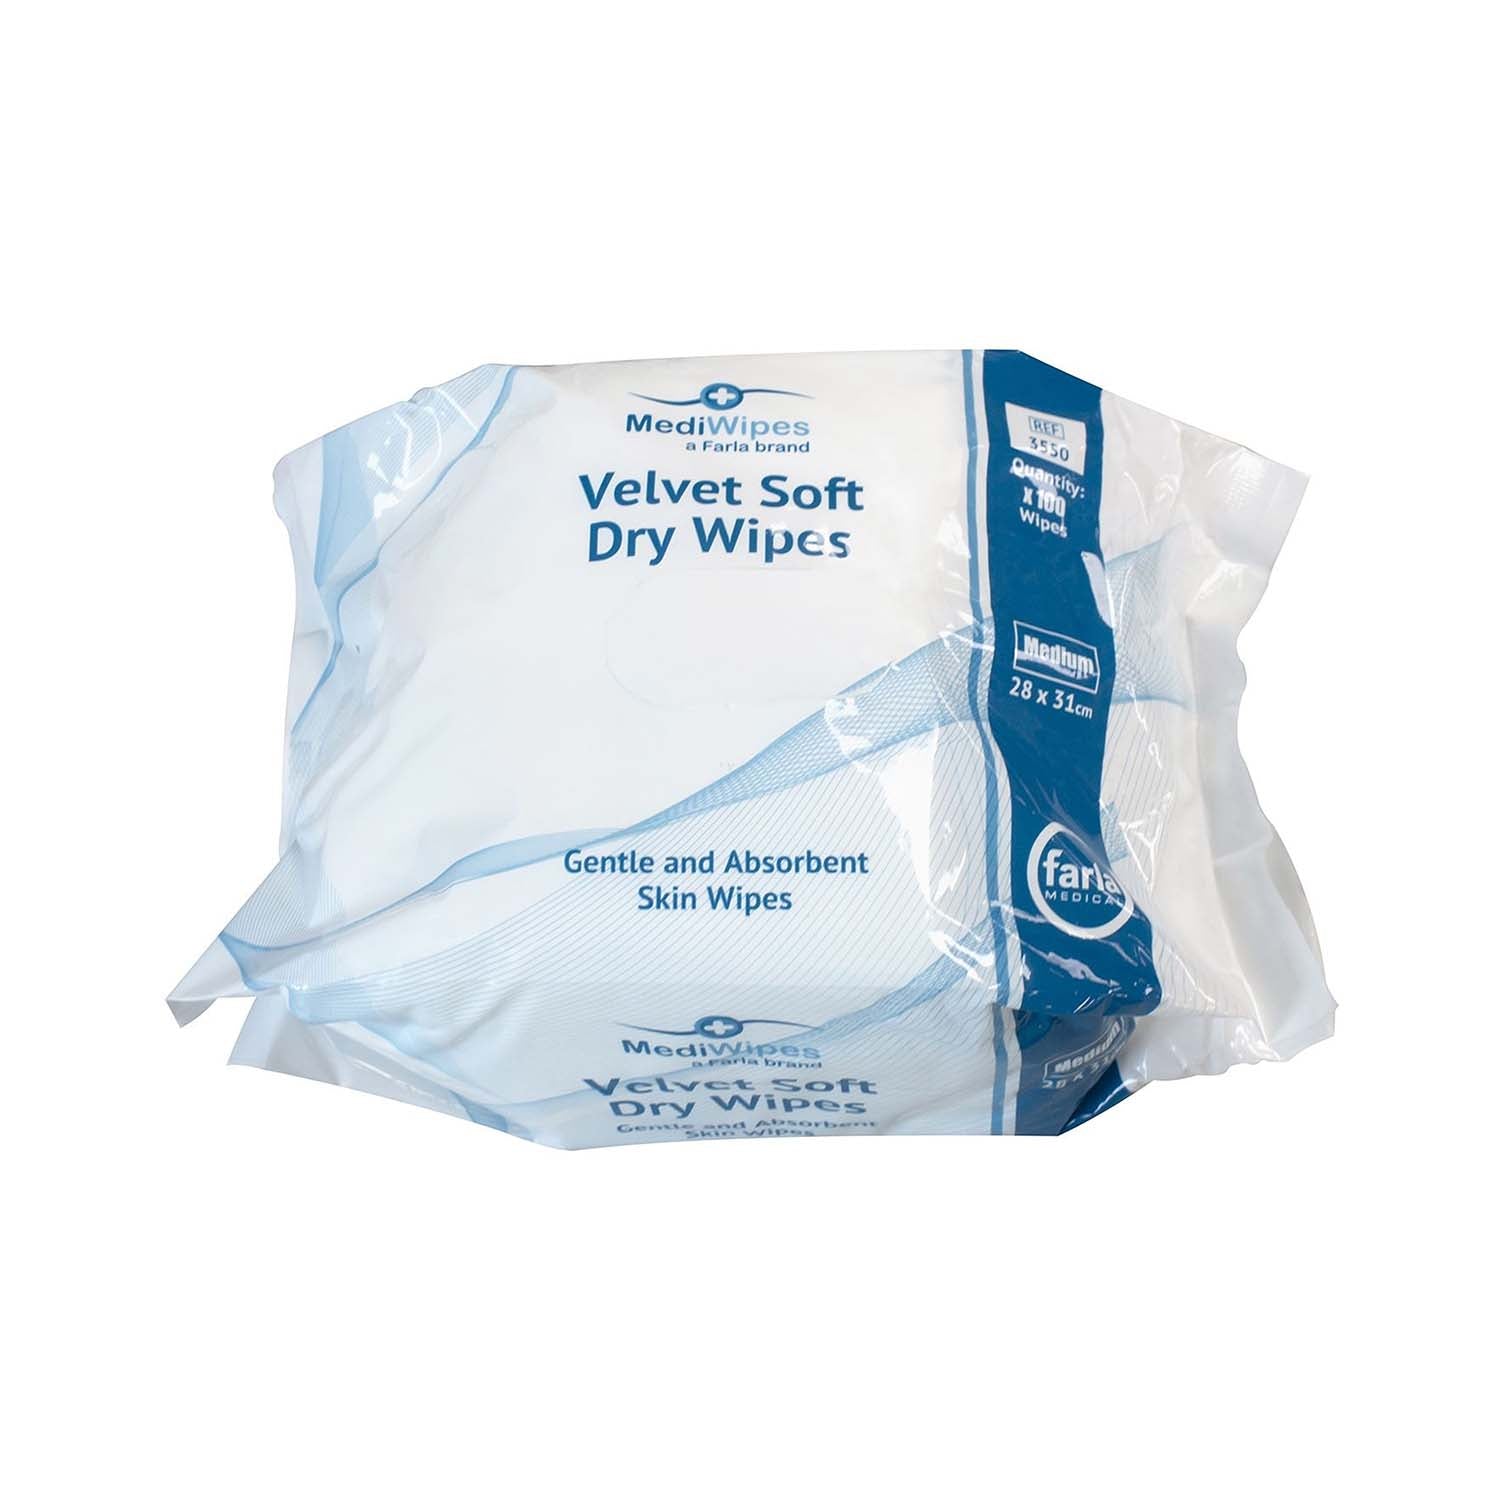 MediWipes Velvet Soft Dry Wipes | Medium | Pack of 100 (2)